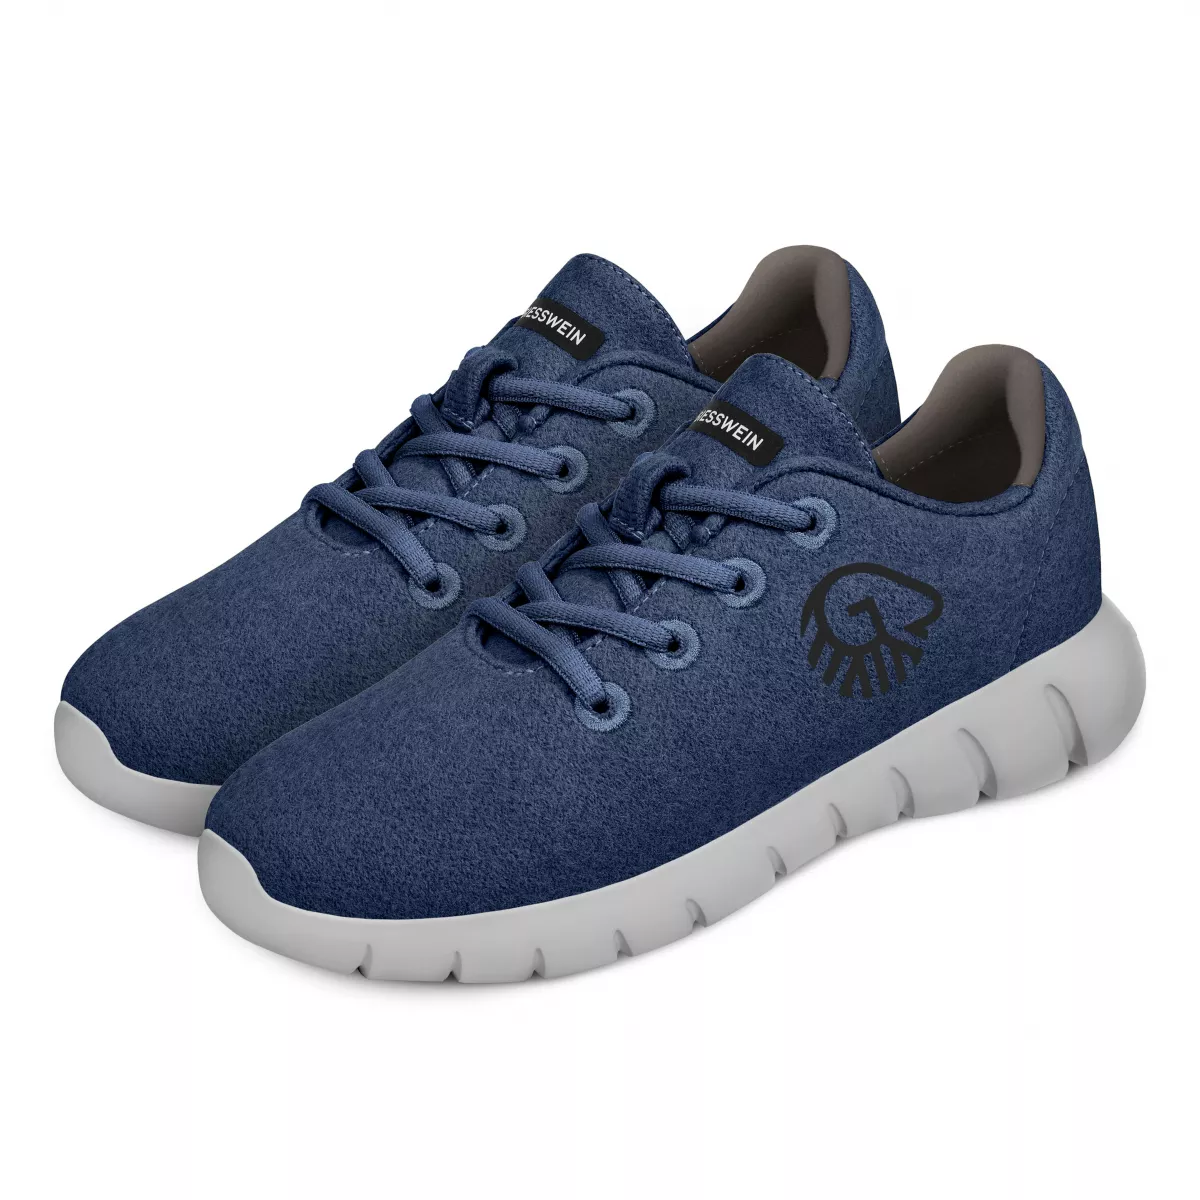 Pantofi barbati Merino Runners, ocean blue 44